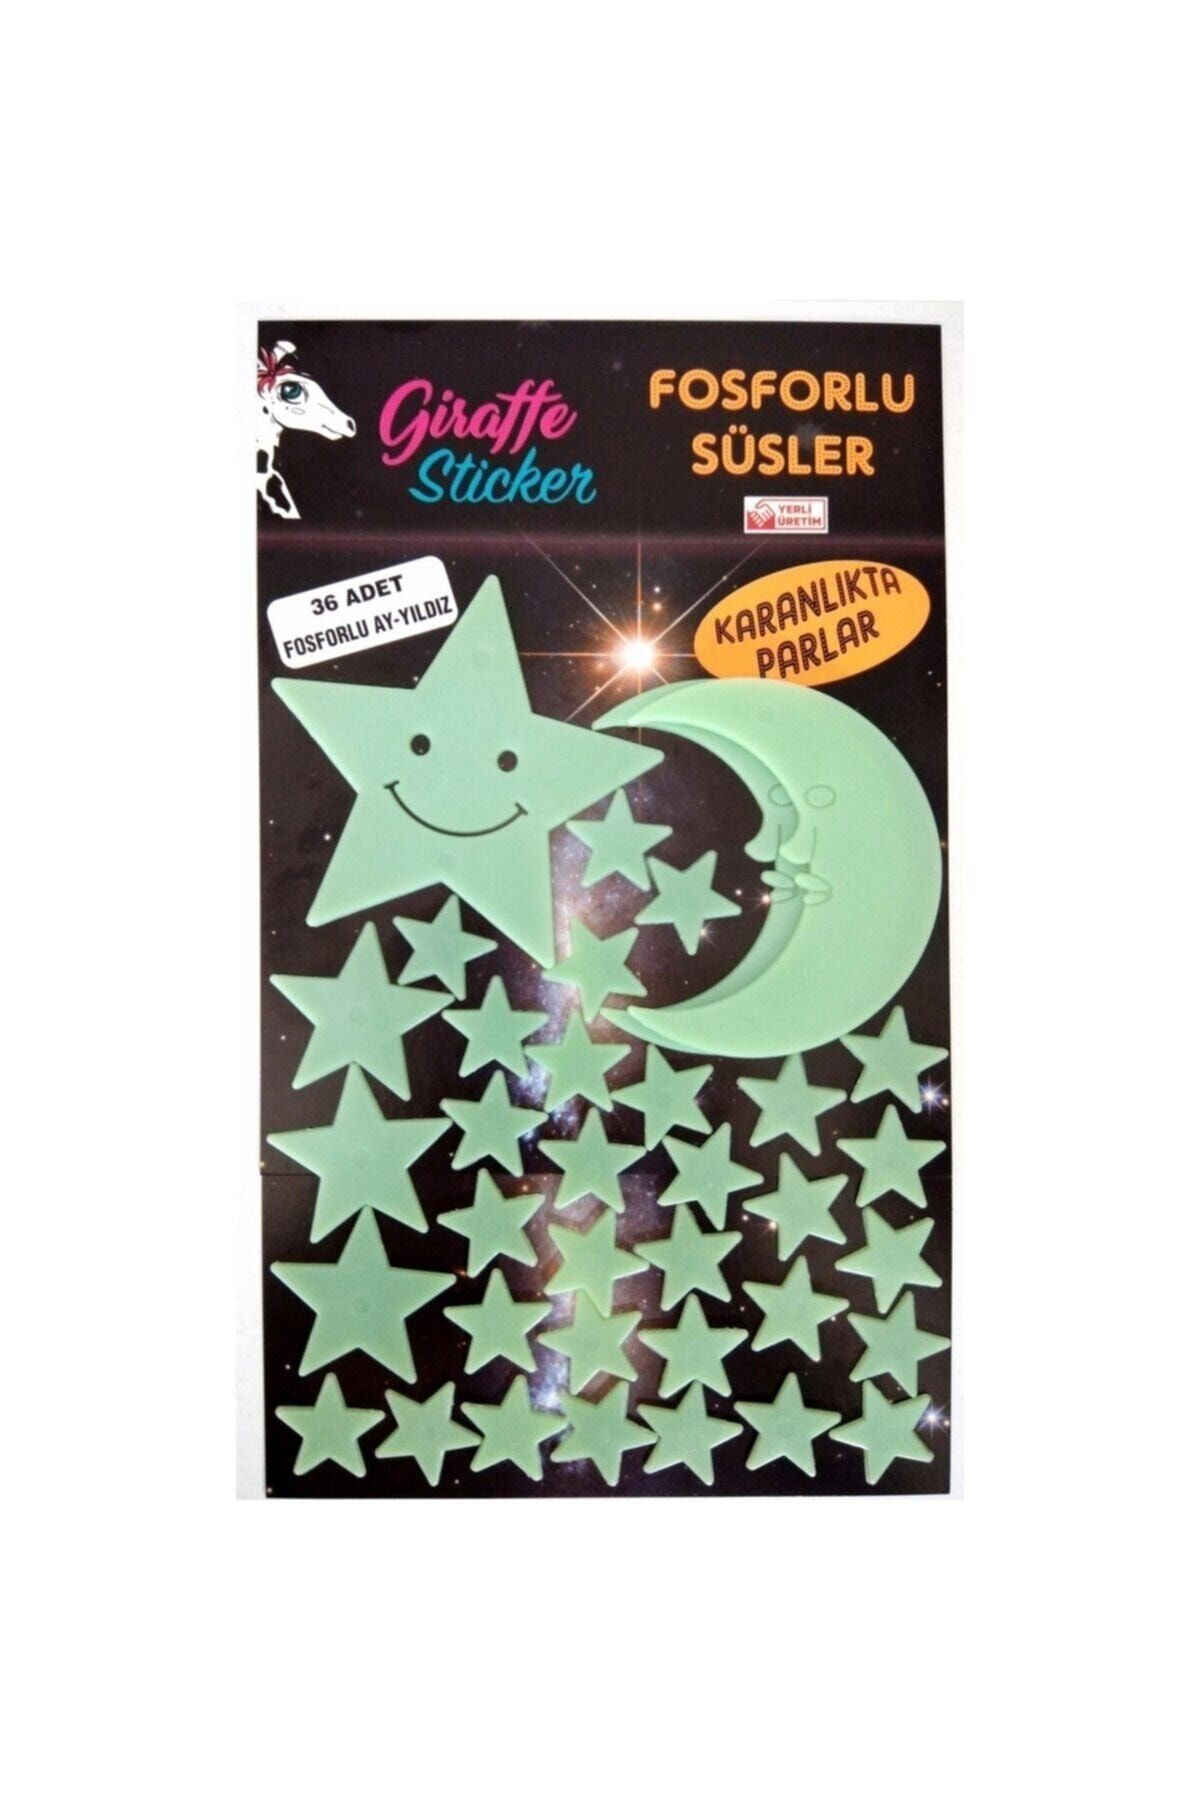 Giraffe Sticker Yeşil Karanlıkta Parlayan Fosforlu Ay ve Yıldız Tasarımlı Dekoratif Sticker 36 Adet